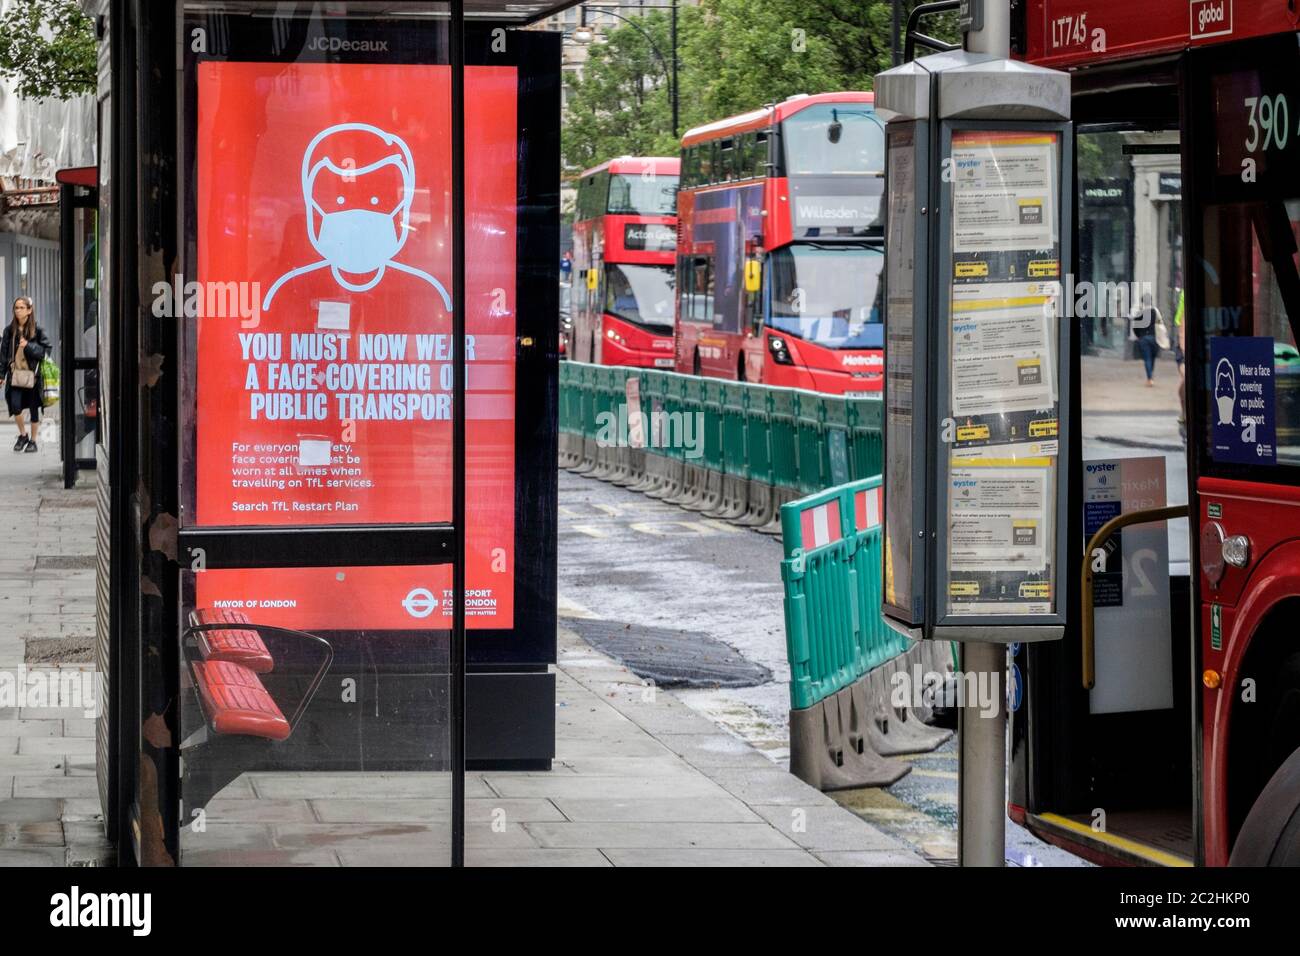 Juni 2020. Elektronische Beschilderung an der Bushaltestelle informiert die Passagiere, dass das Tragen von Gesichtsbedeckungen ist obligatorisch auf allen öffentlichen Verkehrsmitteln. London, Großbritannien. Stockfoto